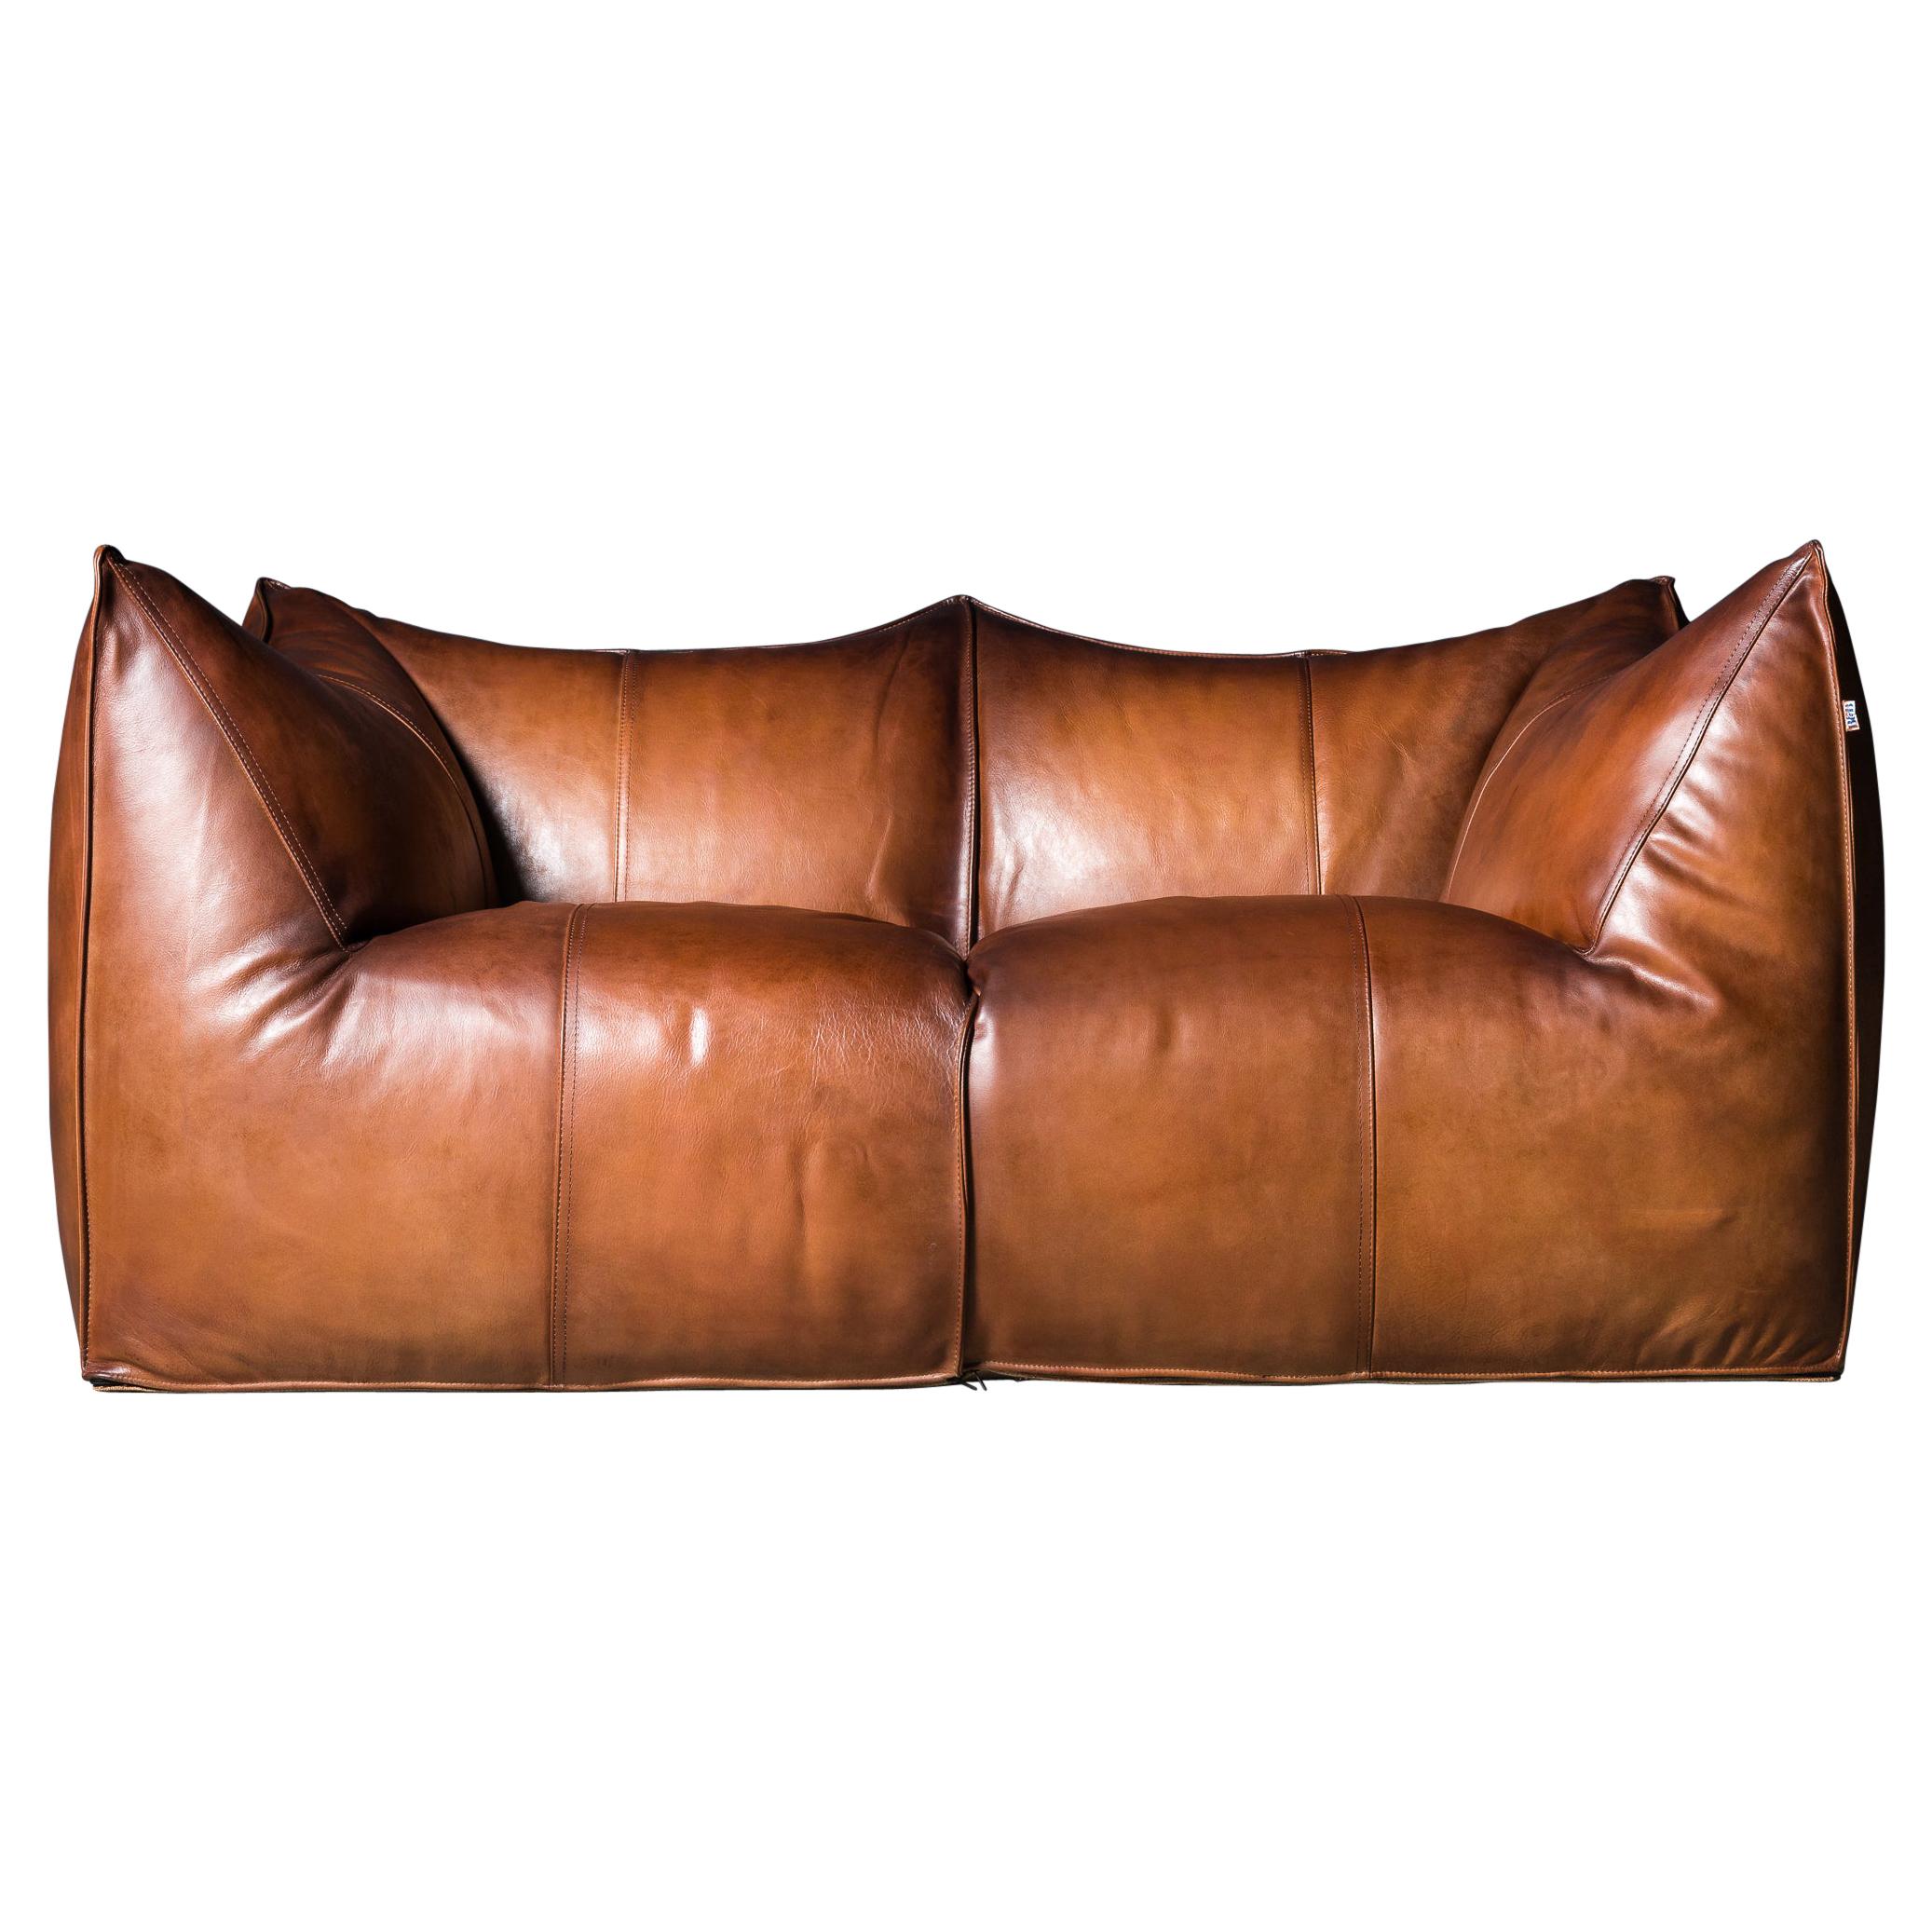 B&B Italia Le Bambole Sofa in Tan Leather